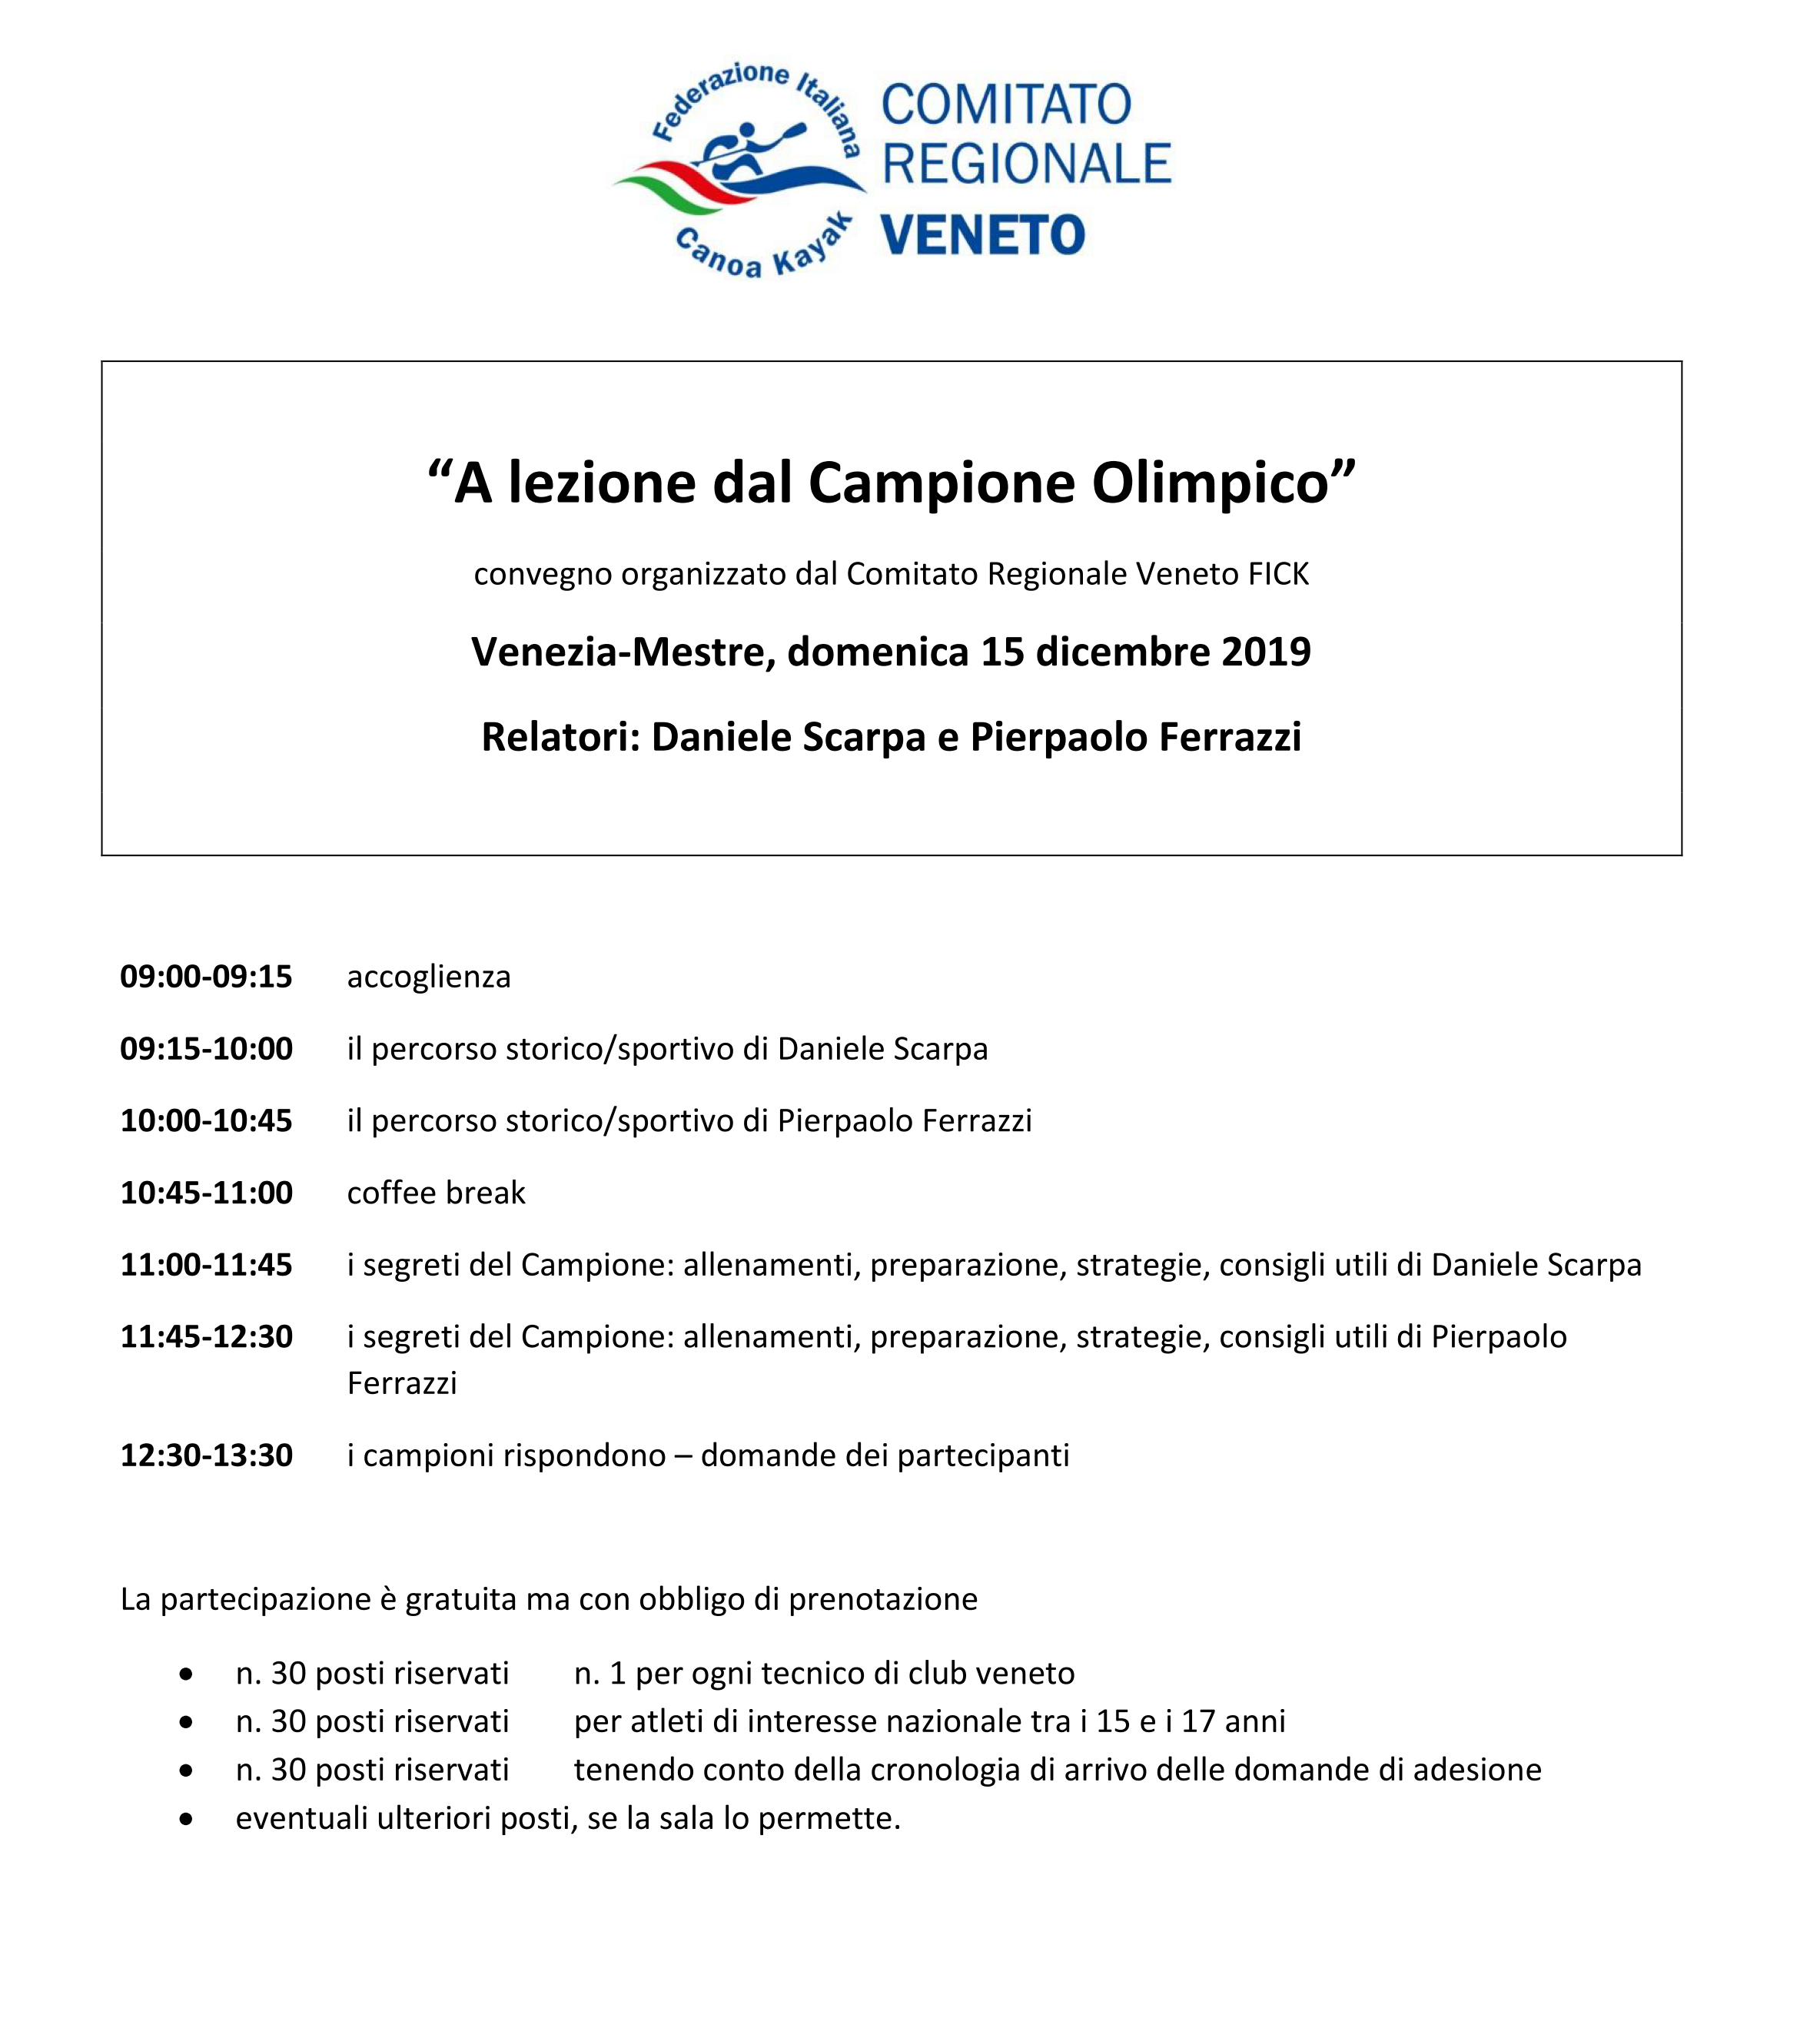 images/comitatiregionali/veneto/2019/bacheca/A_lezione_dal_Campione_Olimpico_01.png